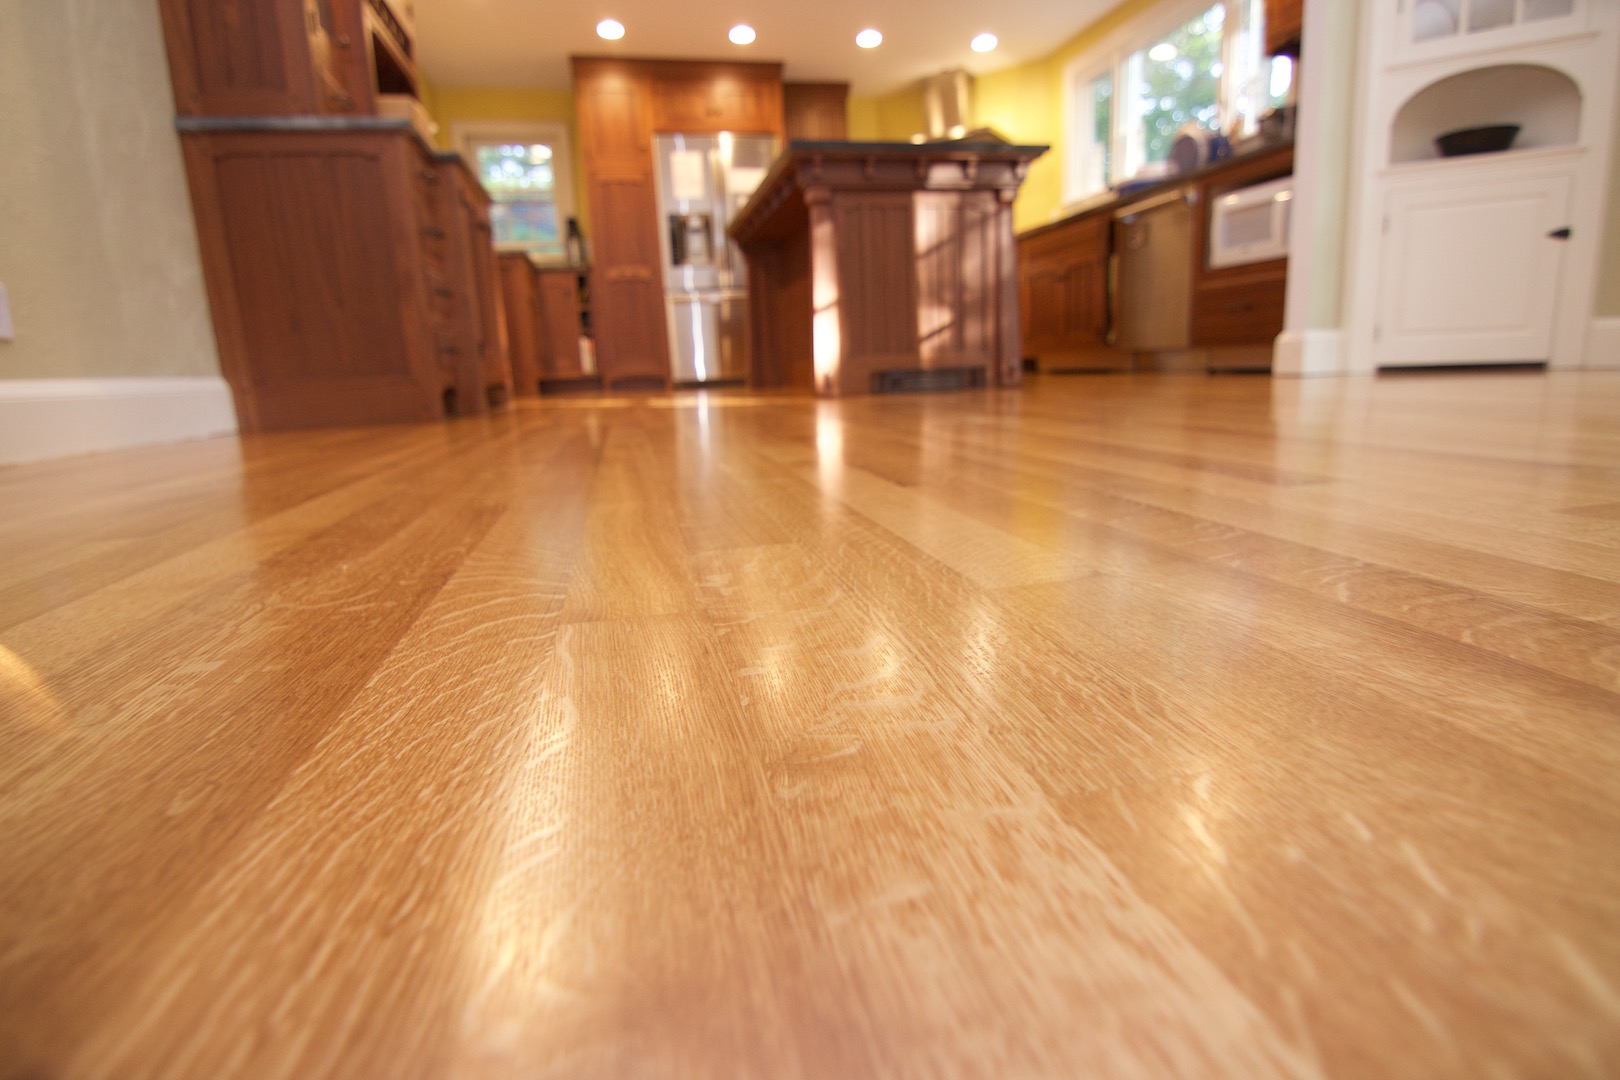 Polyurethane Wood Floor Finish How To, Buffing Hardwood Floors Between Coats